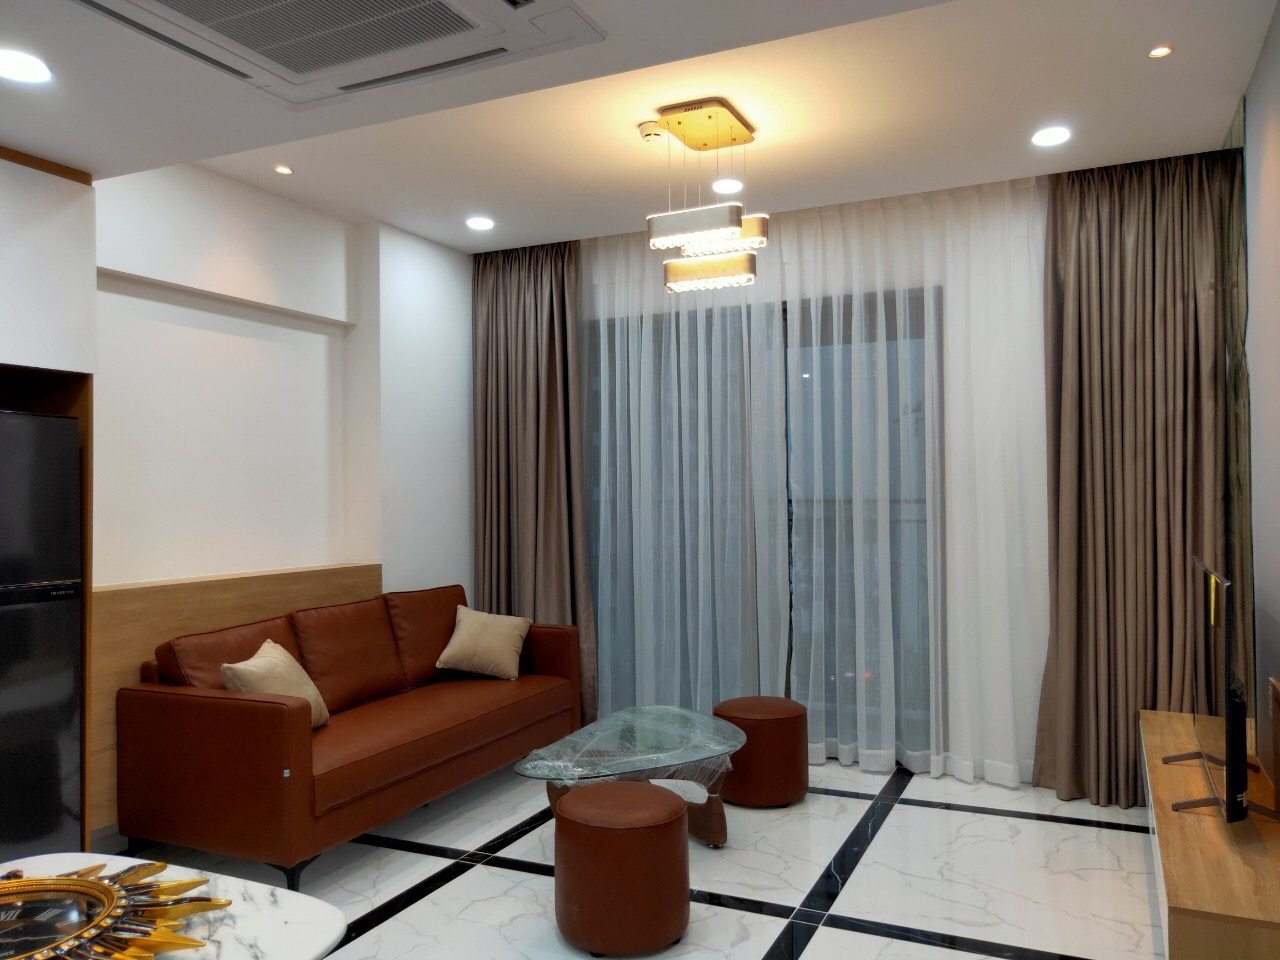 Căn hộ Phú Hoàng Anh bảng giá cho thuê & bán căn hộ mới nhất. LH 0947535251